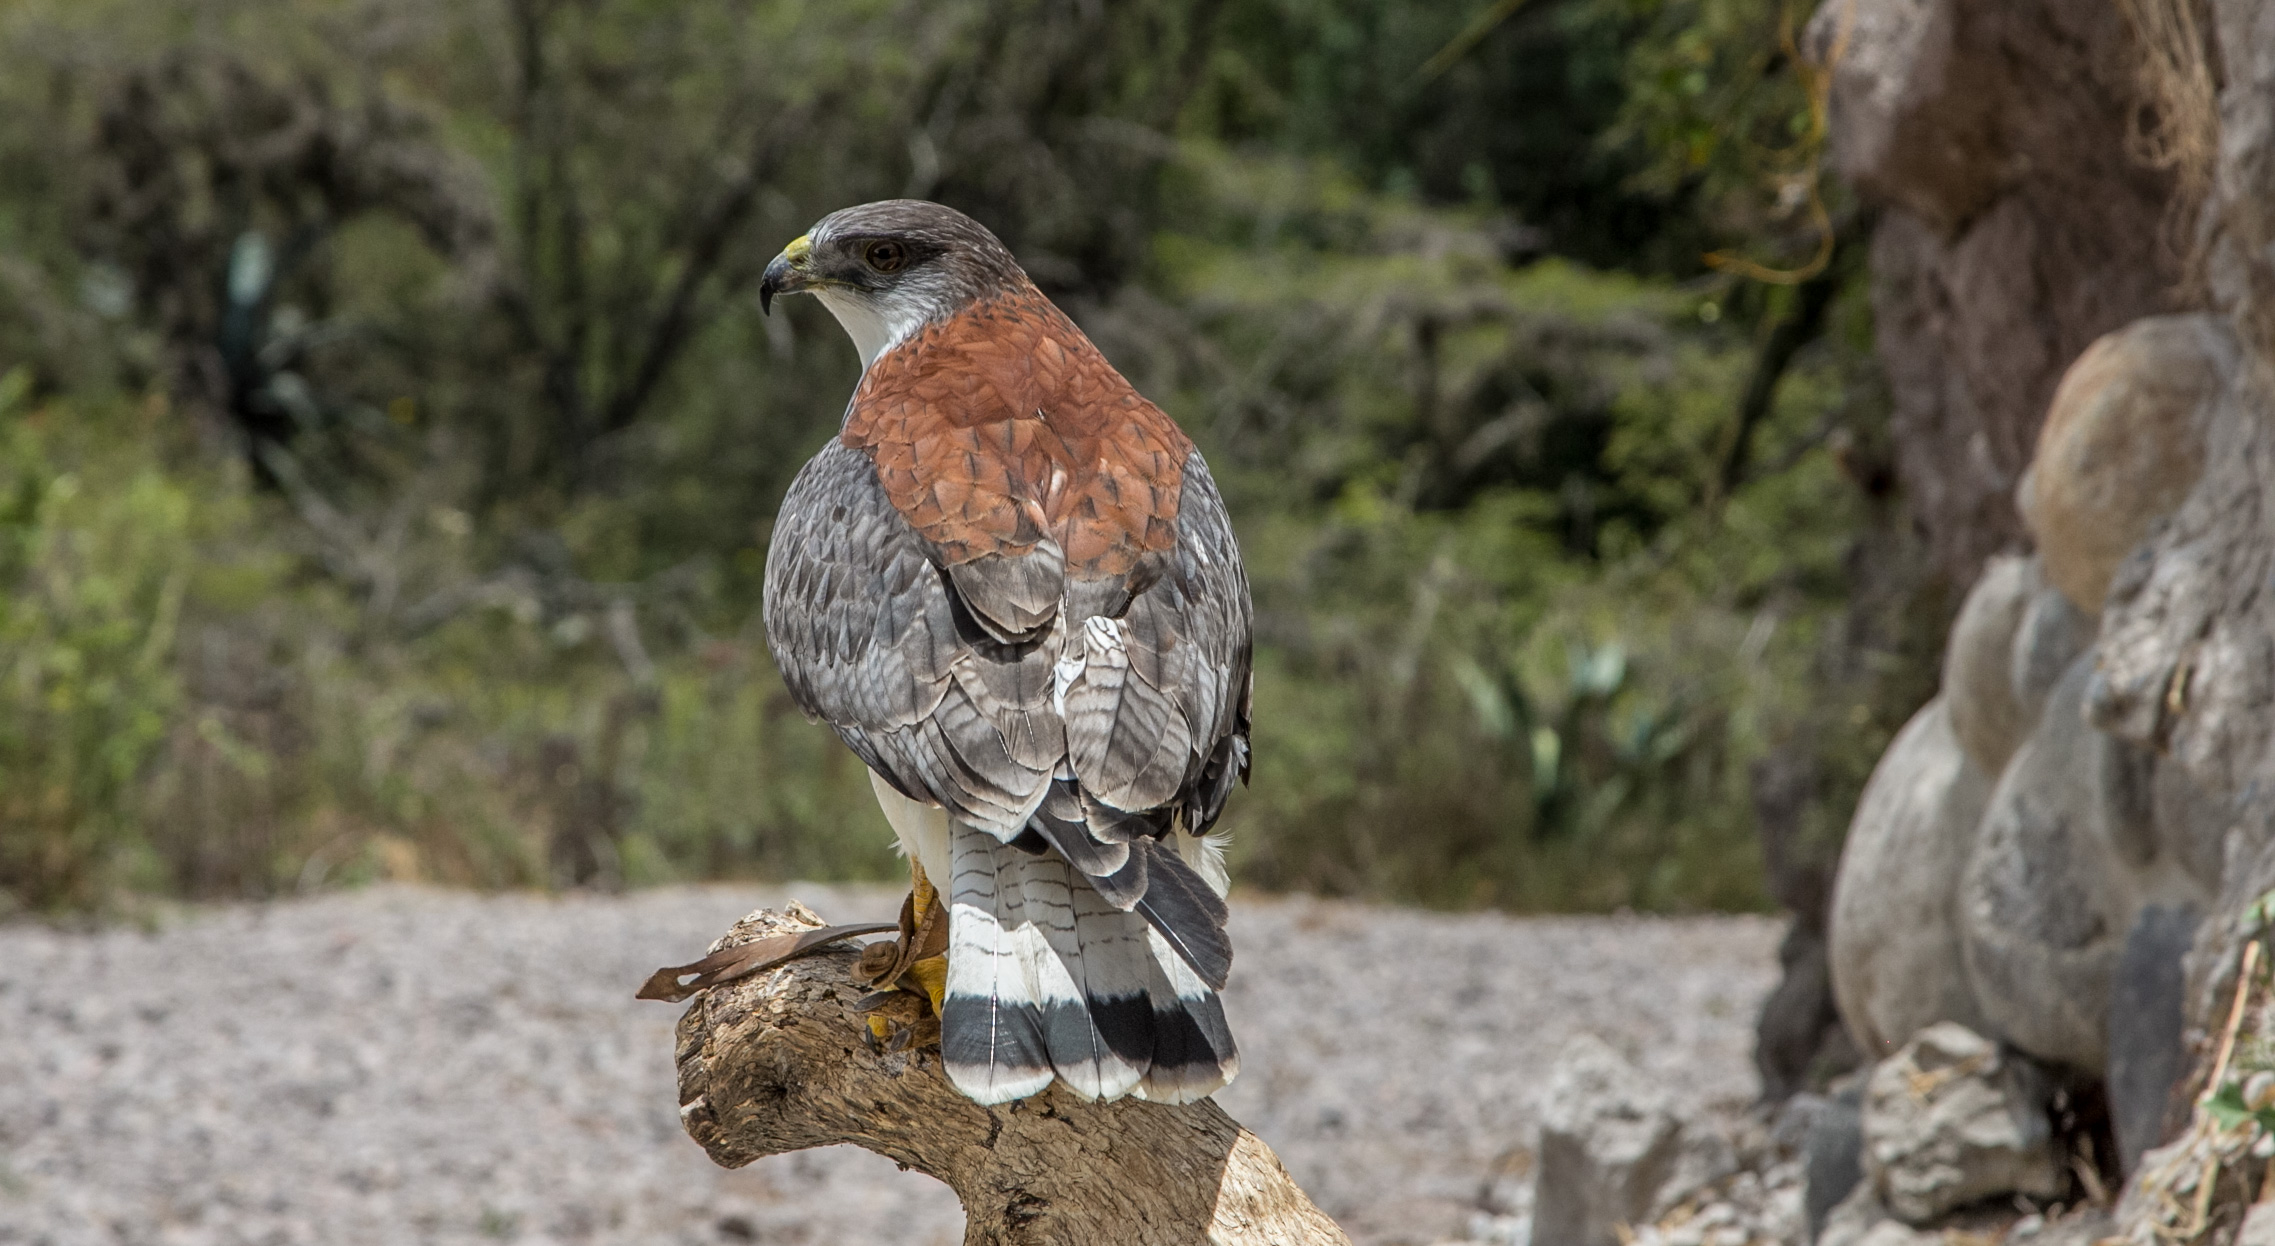 La Fundación Zoológica del Ecuador es el más importante centro de rescate y educación ambiental del país. Varios halcones han sido liberados después de ser atendidos en este centro (Foto: Alejandro Ramírez Anderson)